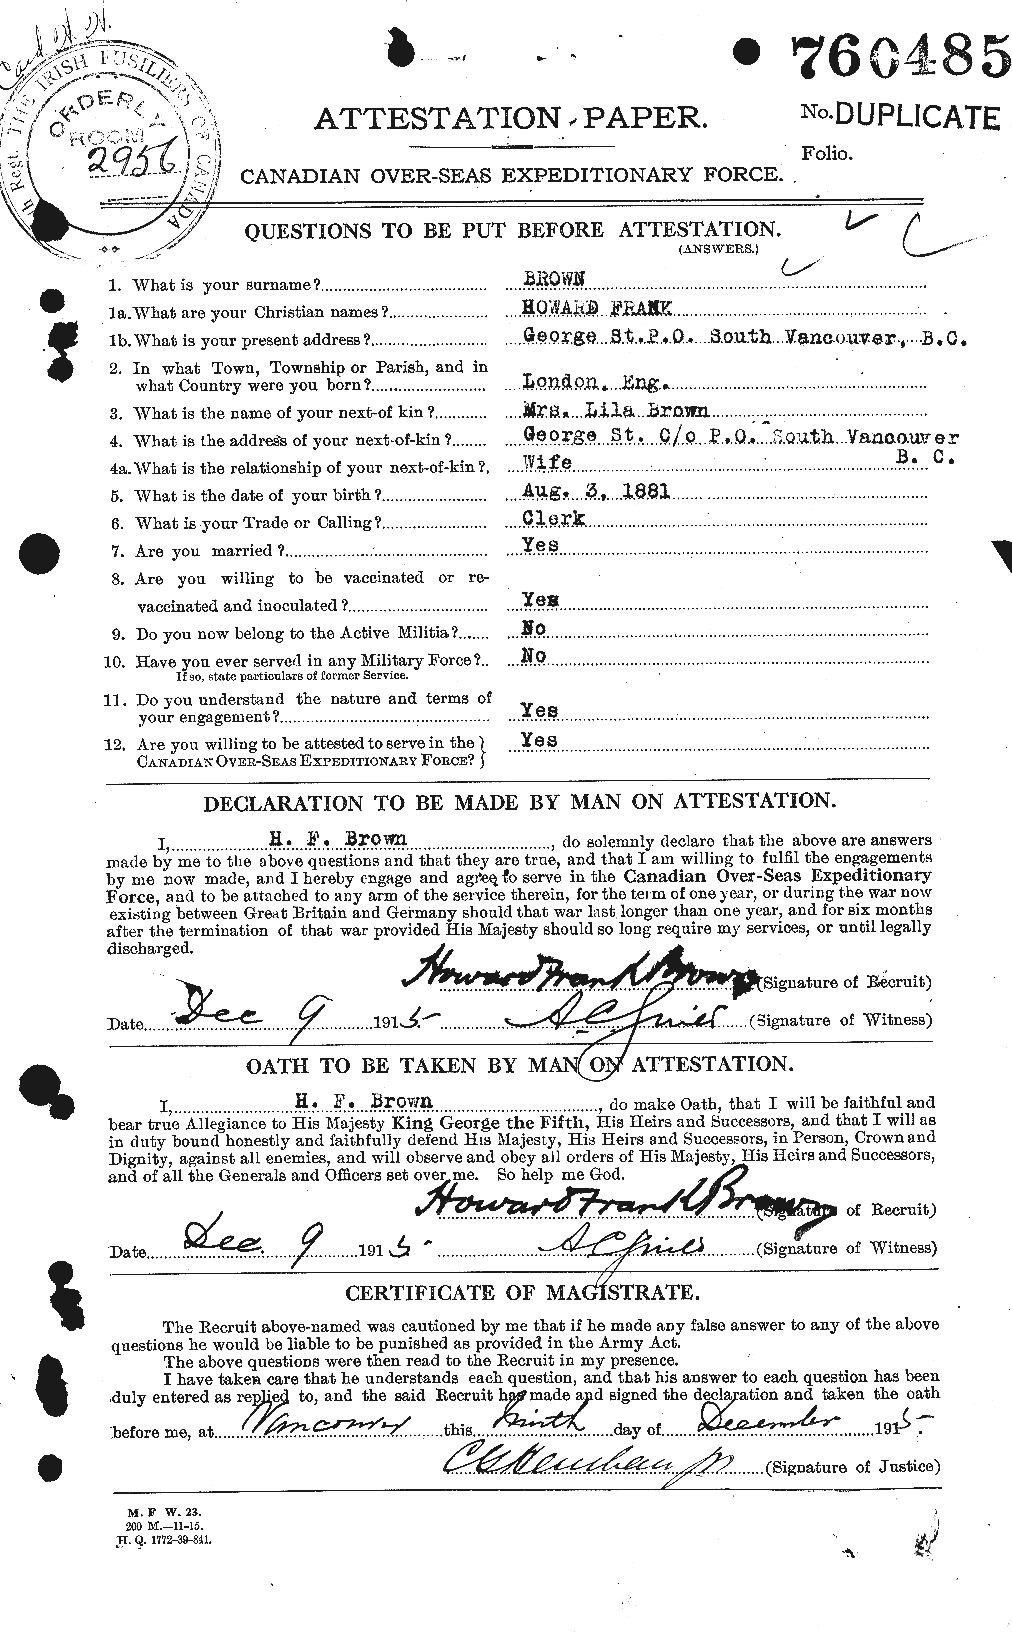 Dossiers du Personnel de la Première Guerre mondiale - CEC 265617a